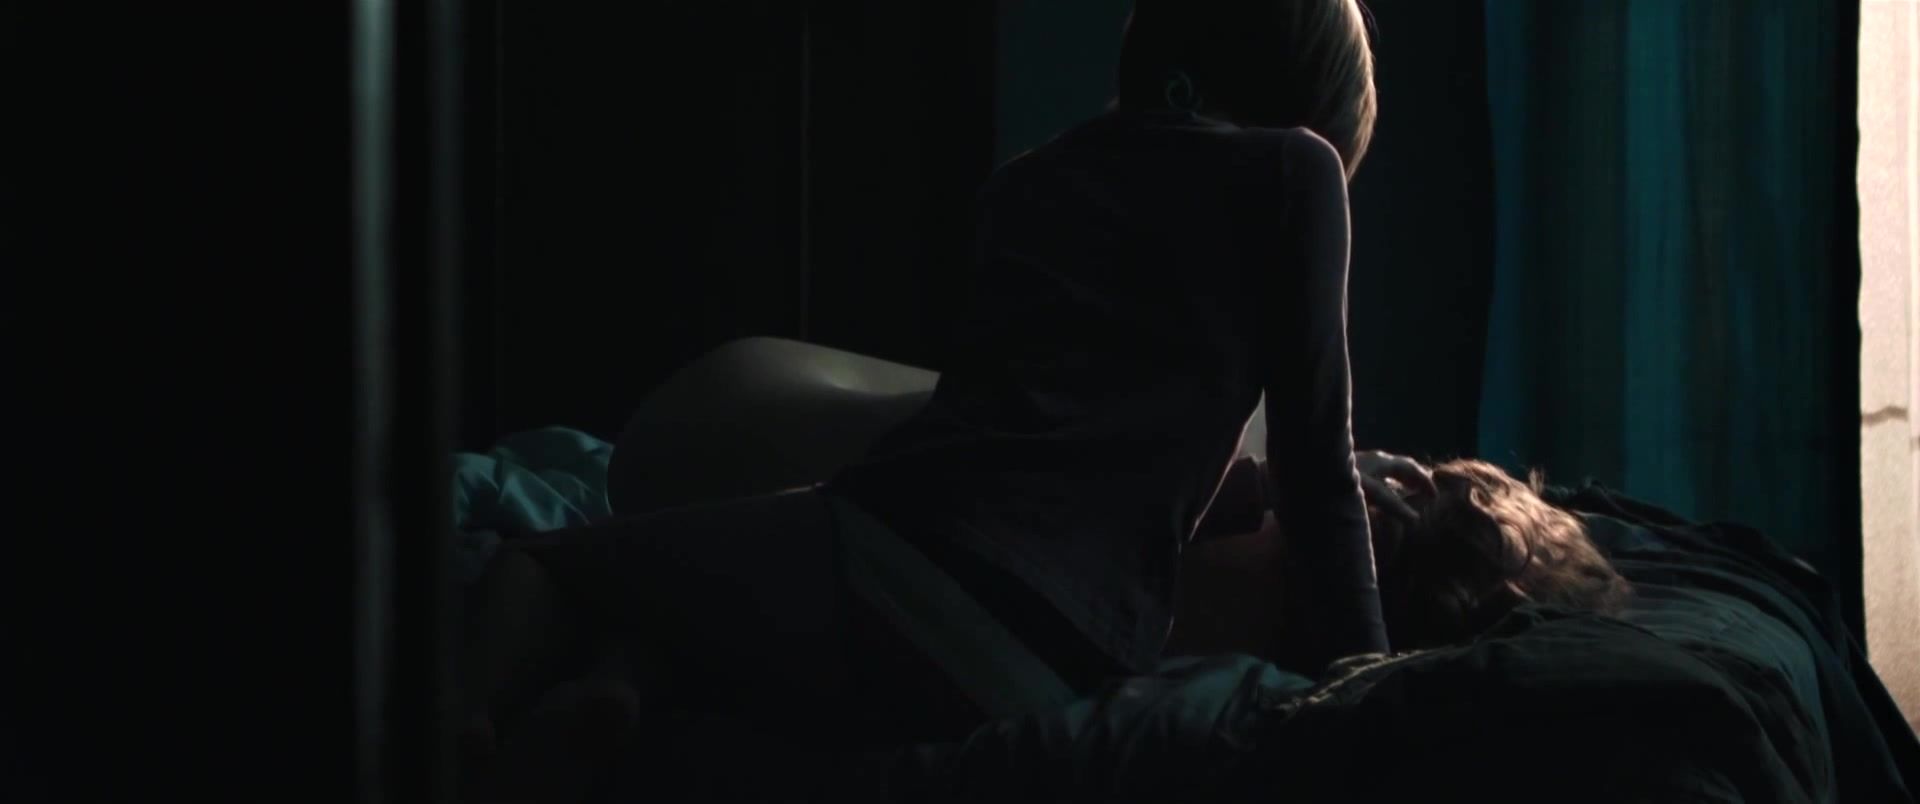 Roundass Sex video Leeanna Walsman Nude - Dawn (2015) Gay Boysporn